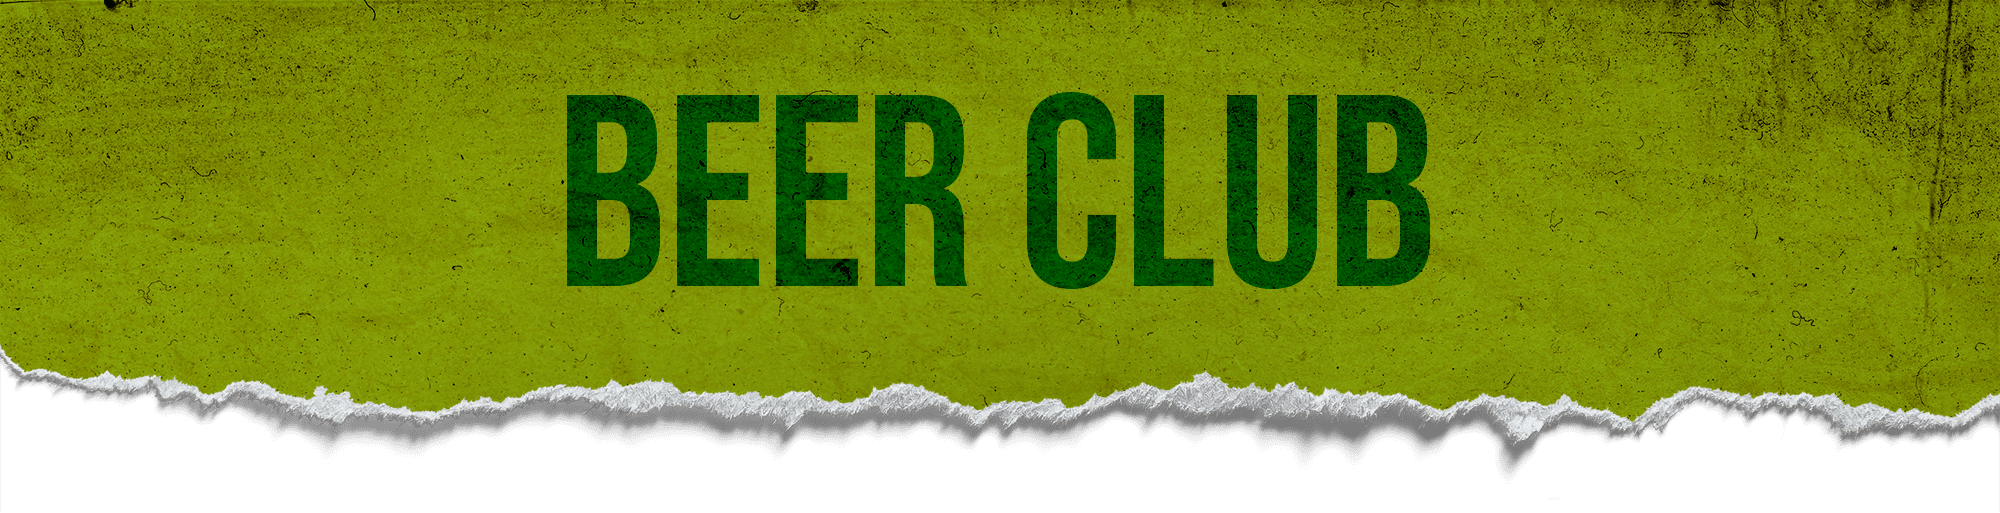 Beer Club Page Header